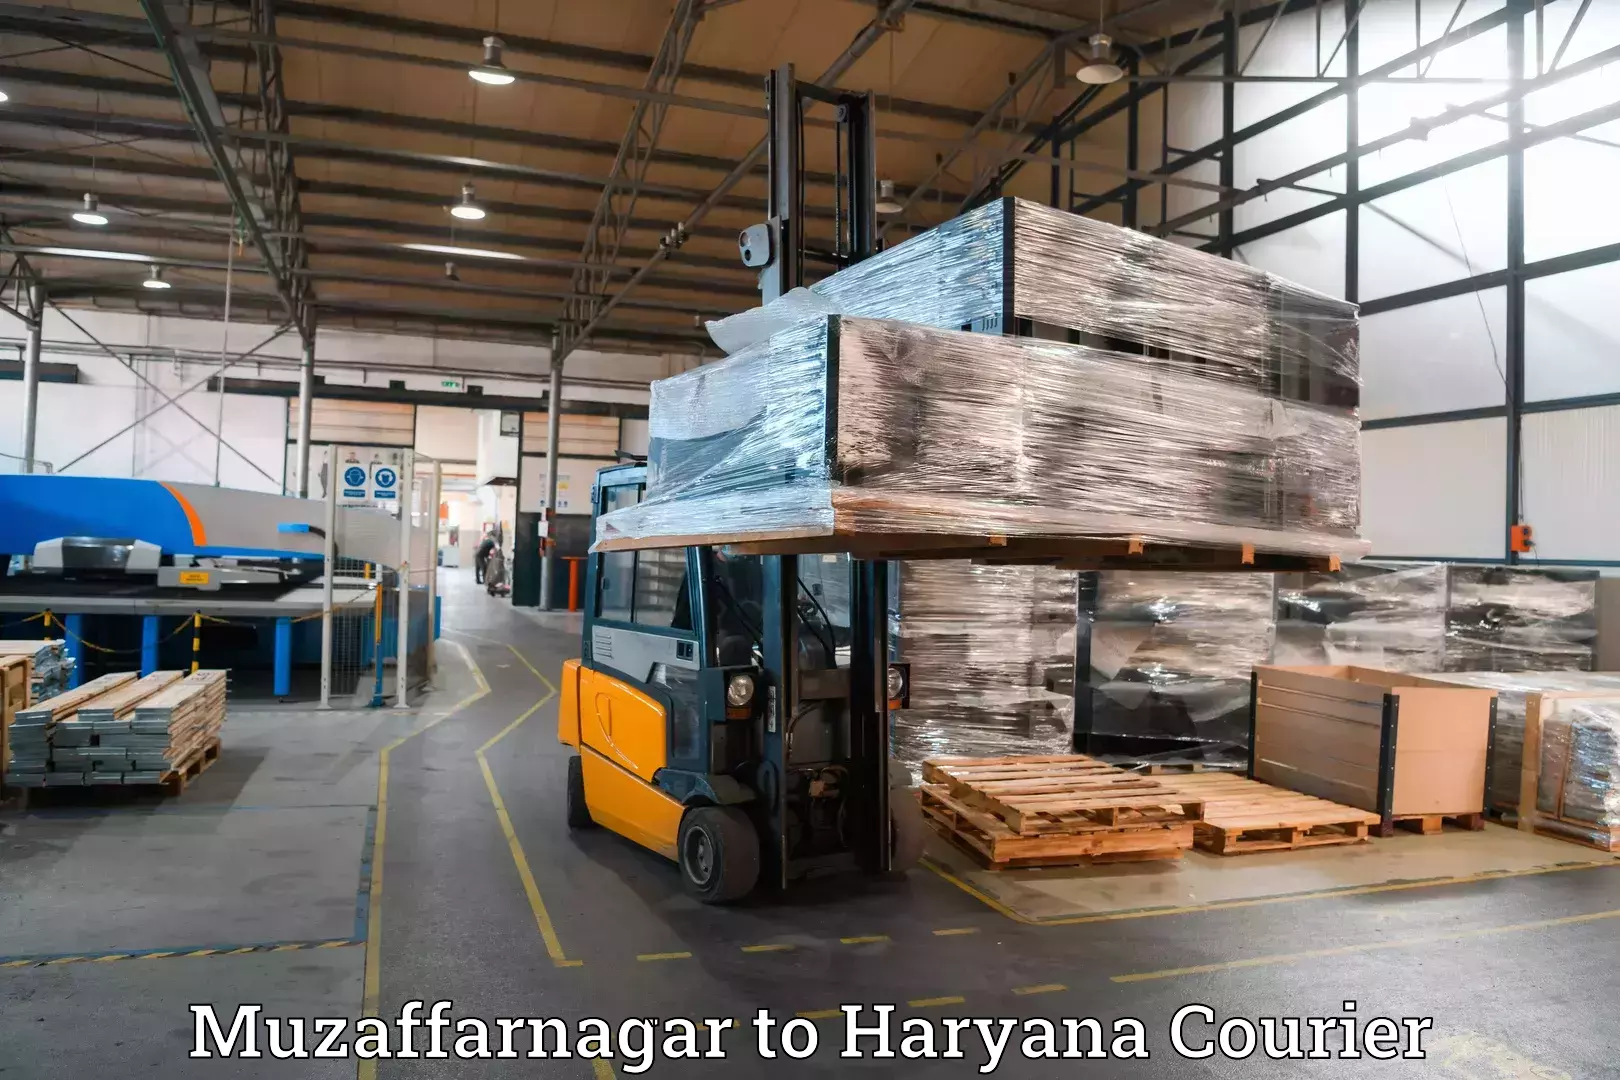 Baggage shipping logistics in Muzaffarnagar to Chaudhary Charan Singh Haryana Agricultural University Hisar